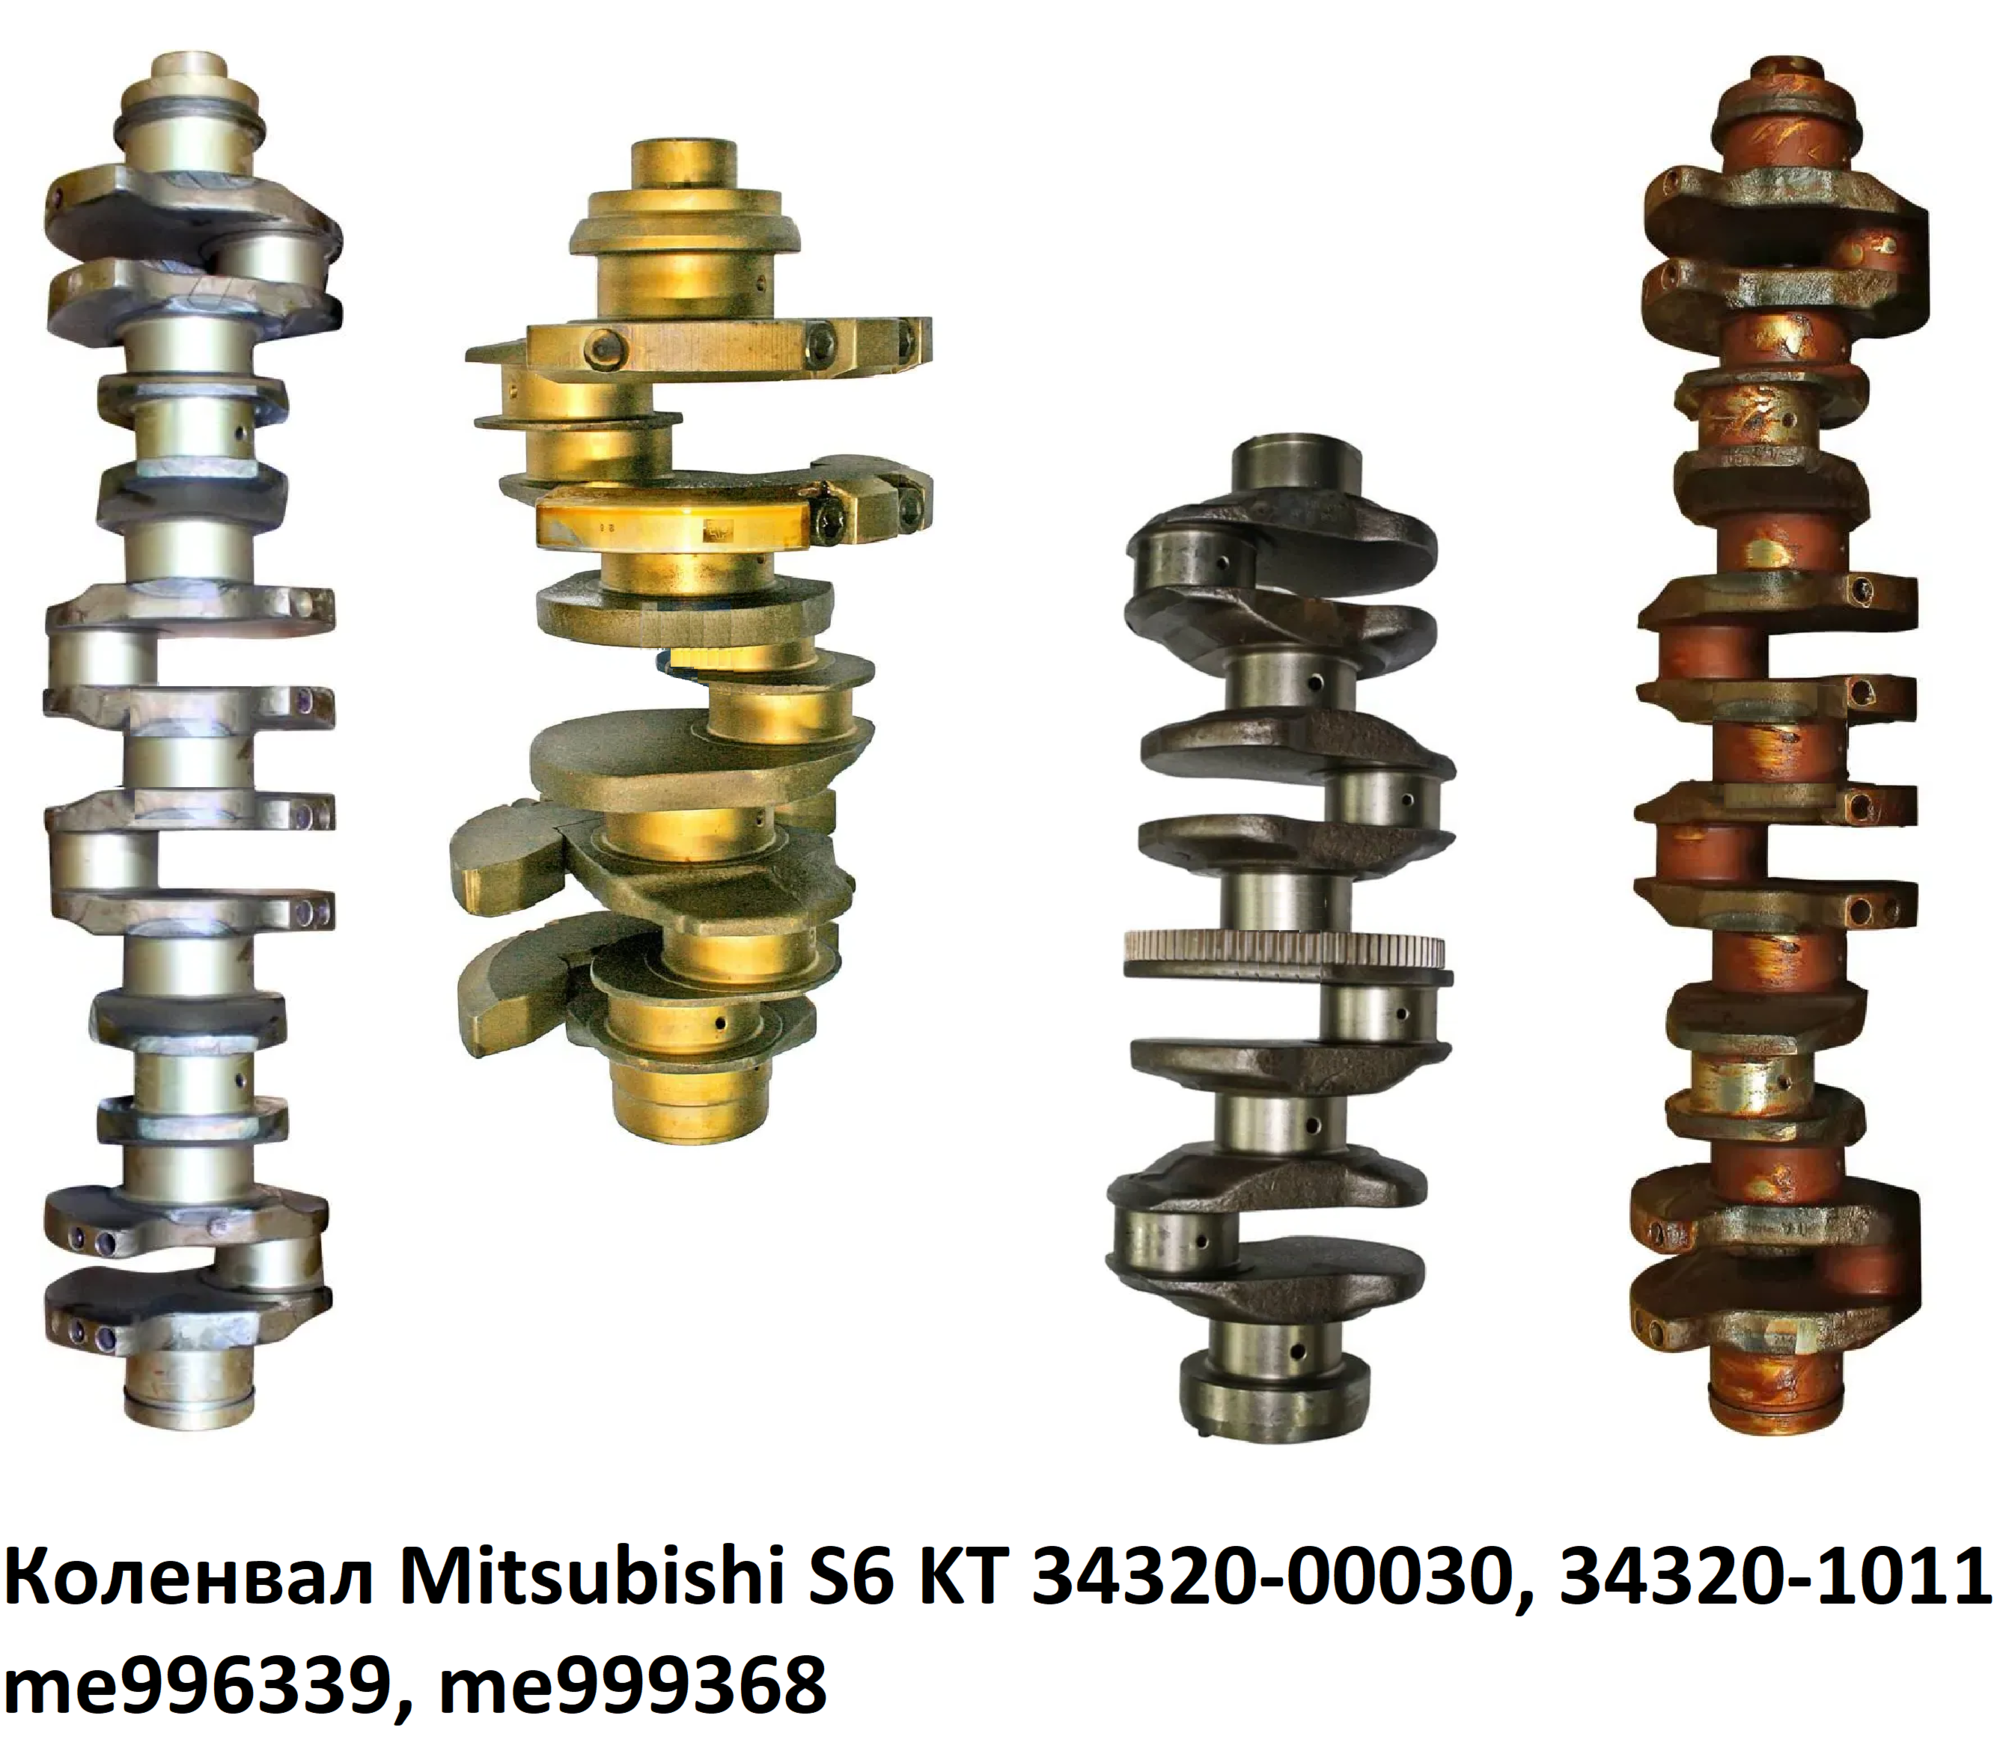 Коленвал Mitsubishi S6 KT, 34320-00030, 34320-1011, 3432000030, 343201011, me996339, me999368